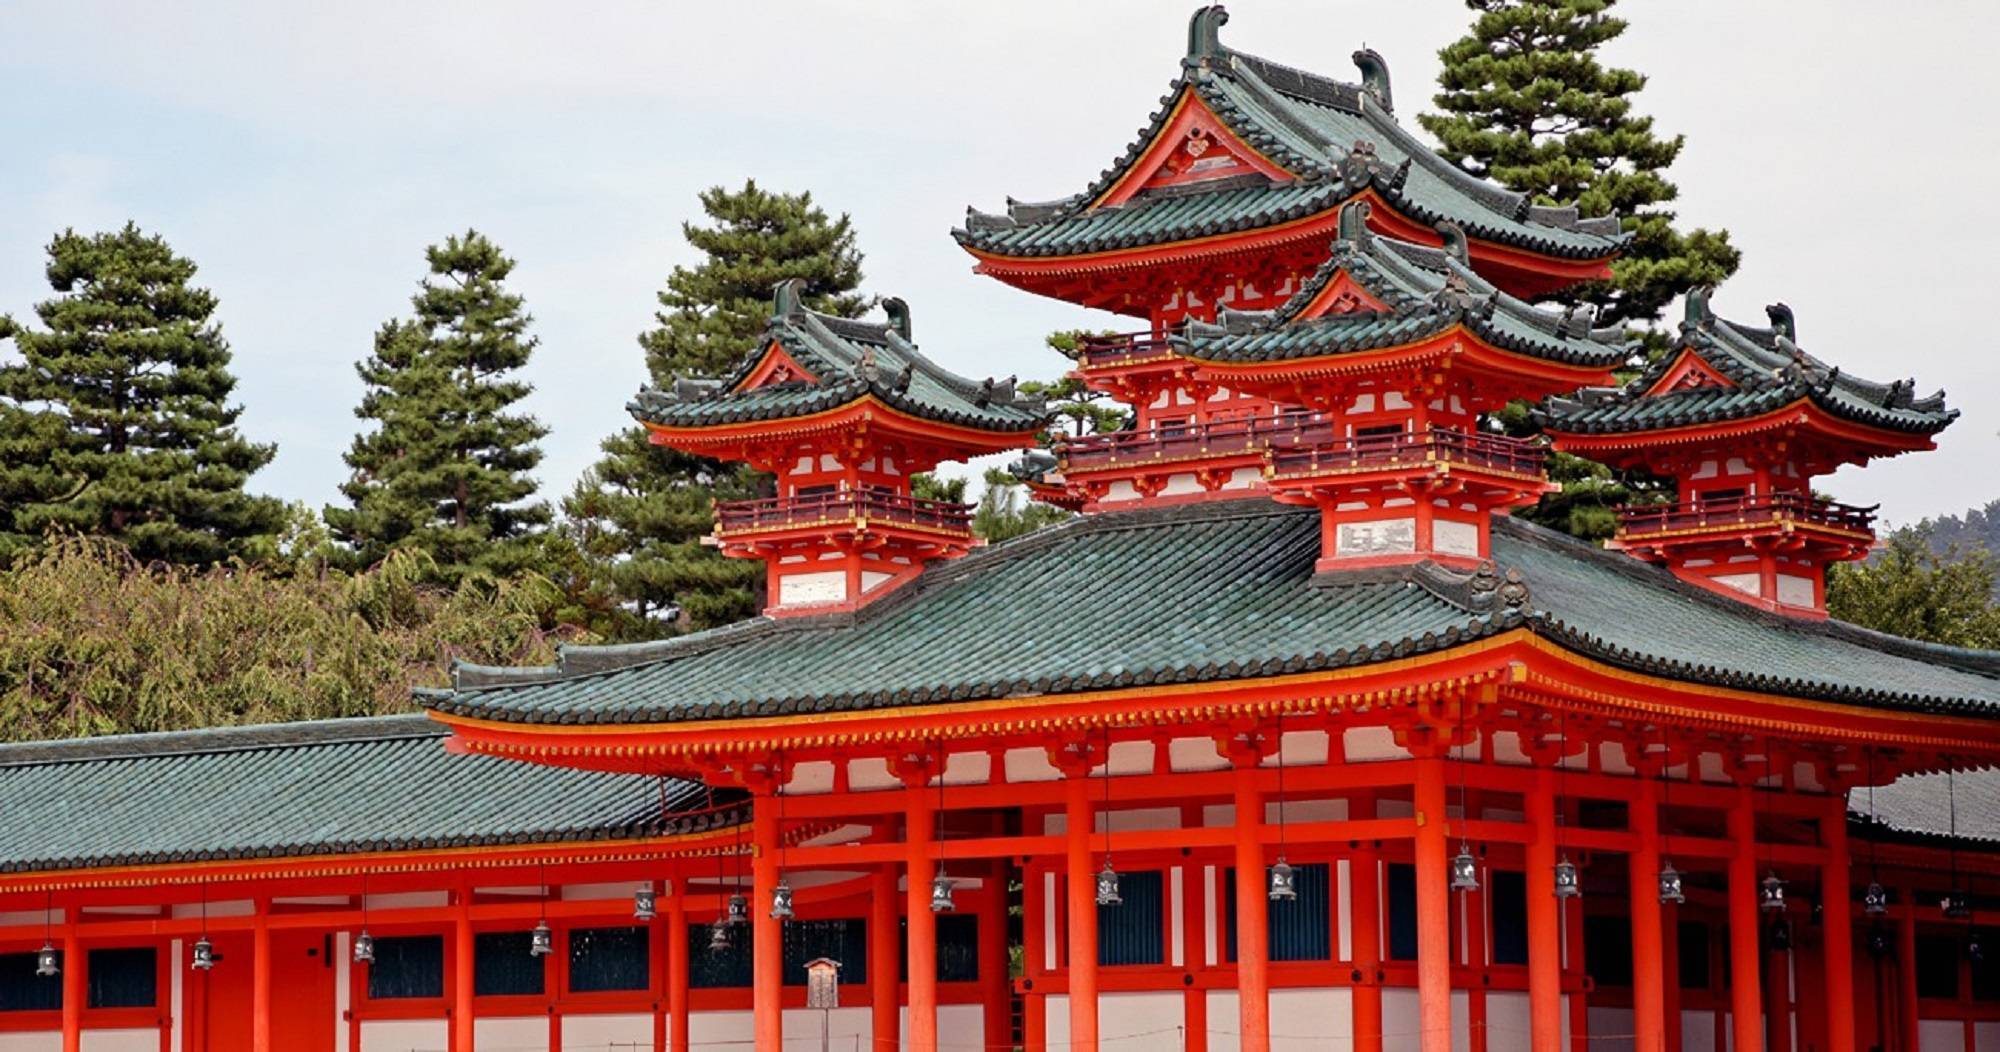 Șintoismul, religia oficială a Japoniei – origini, zeități și cronici